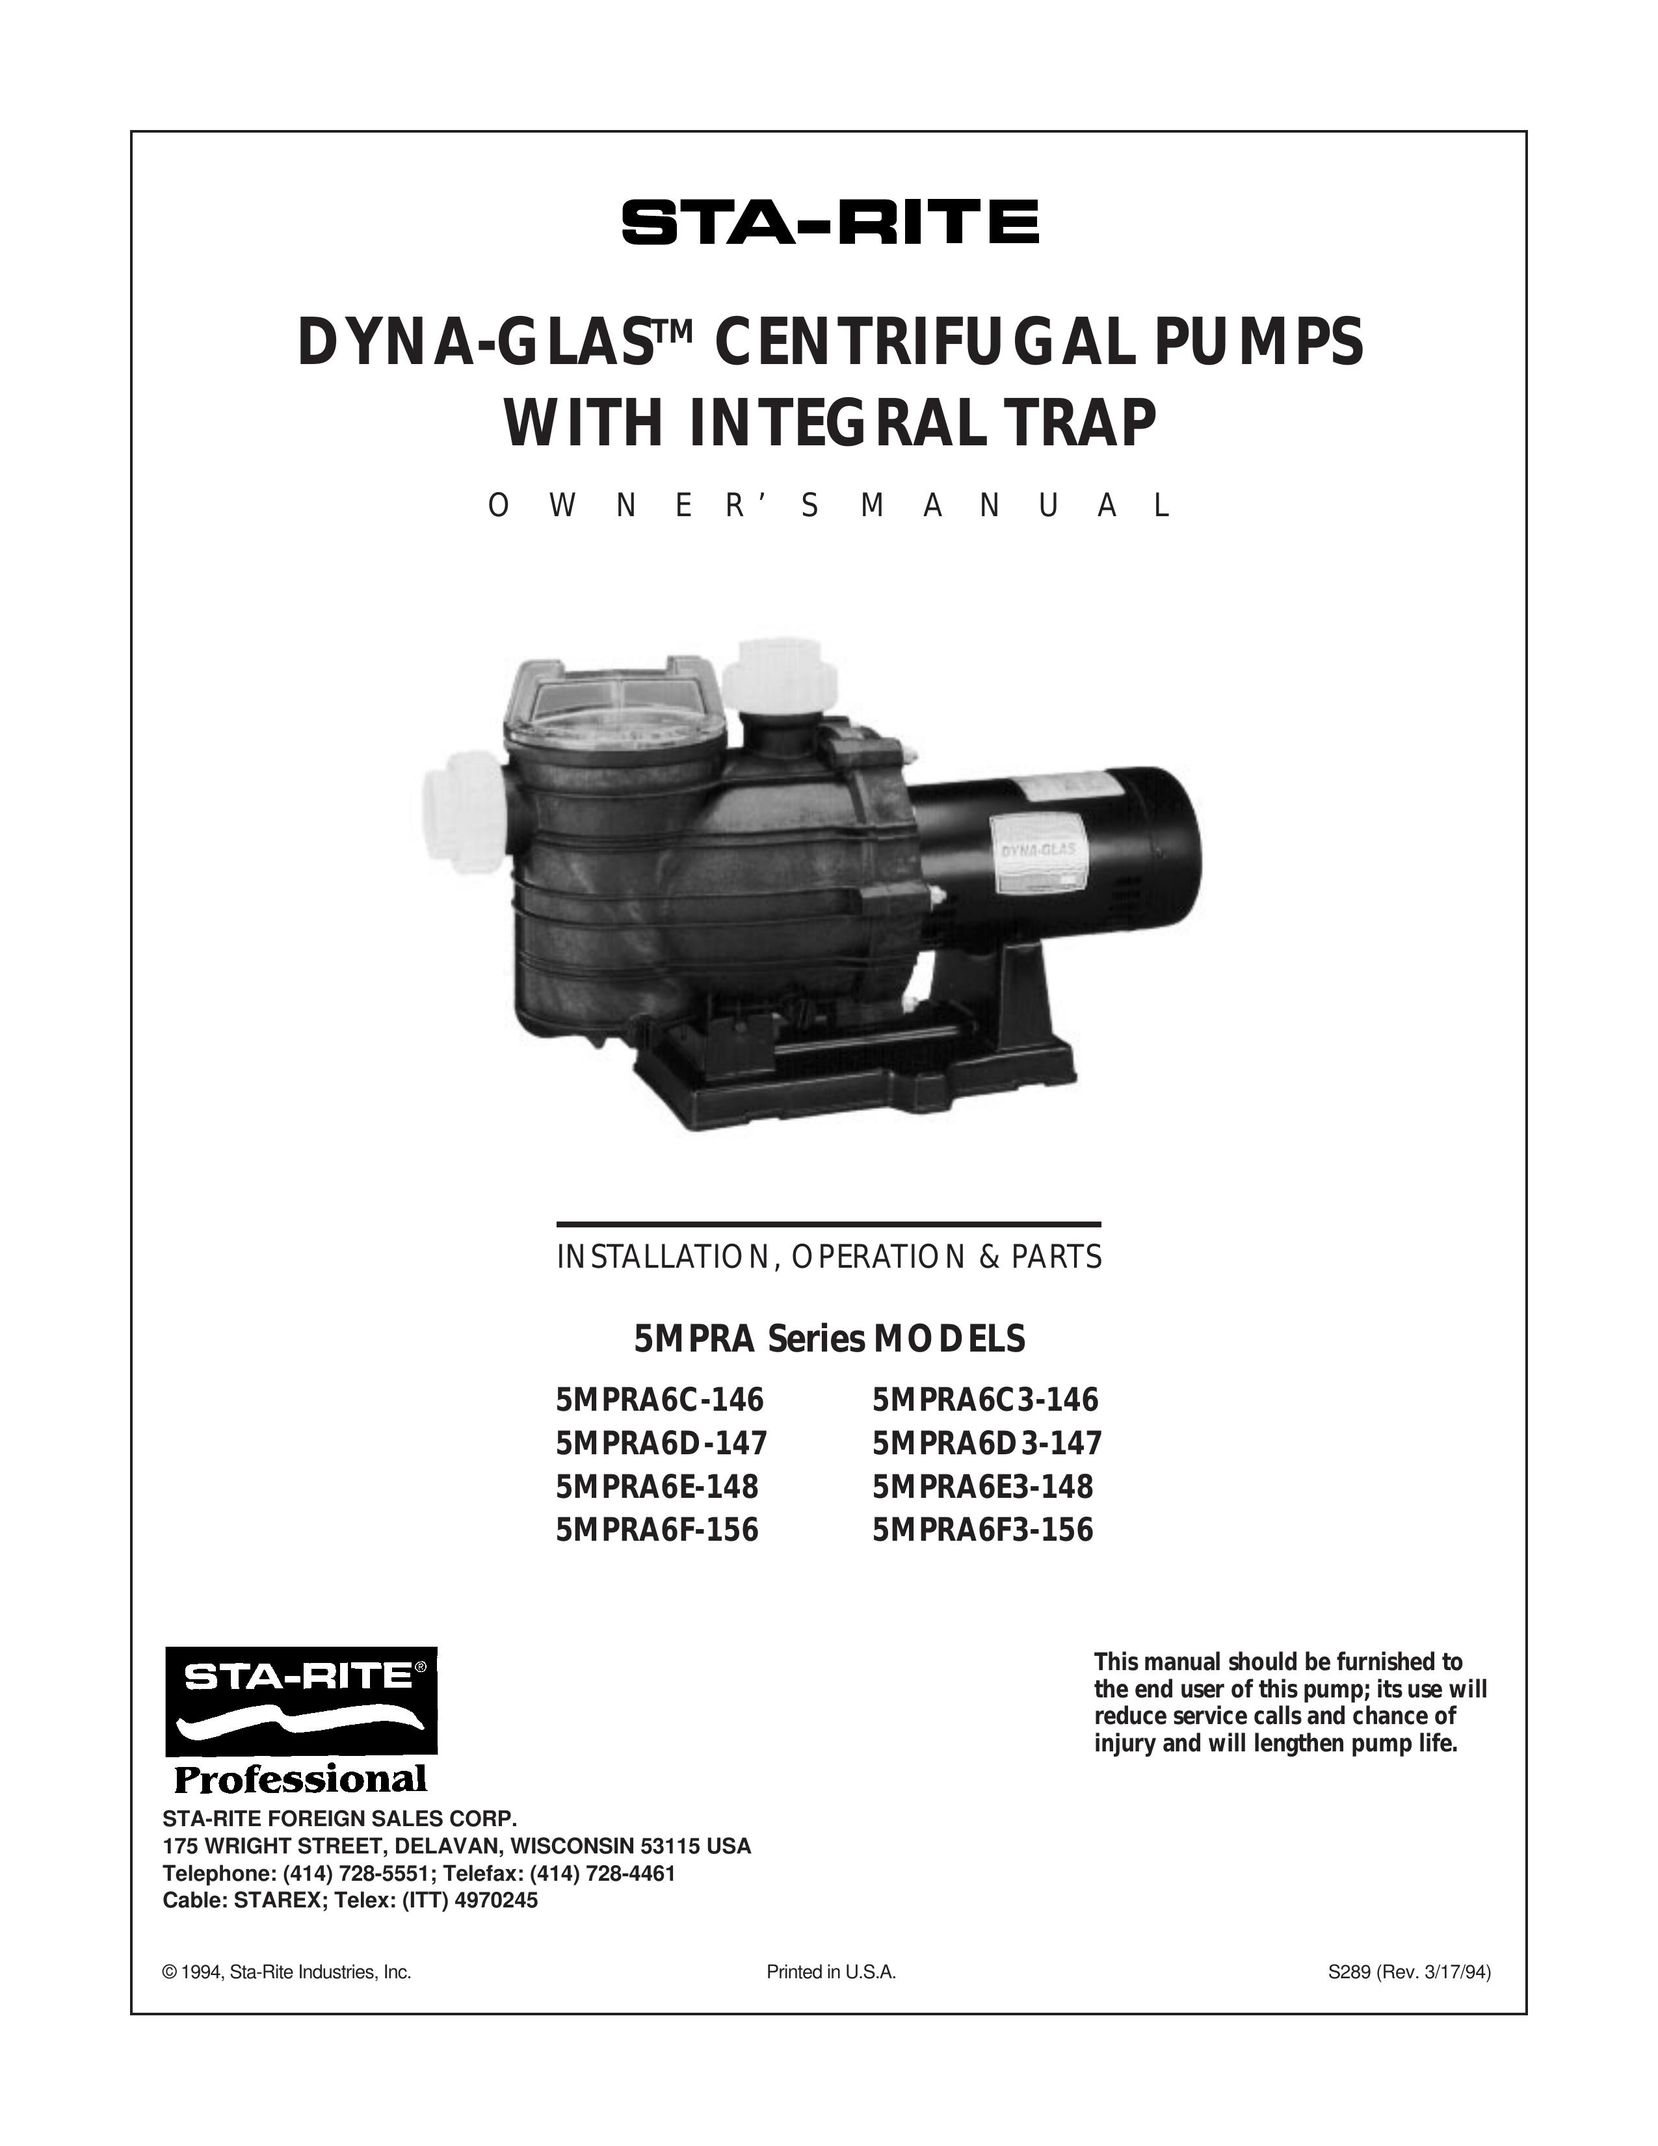 Mad Catz 5MPRA6F-156 Water Pump User Manual